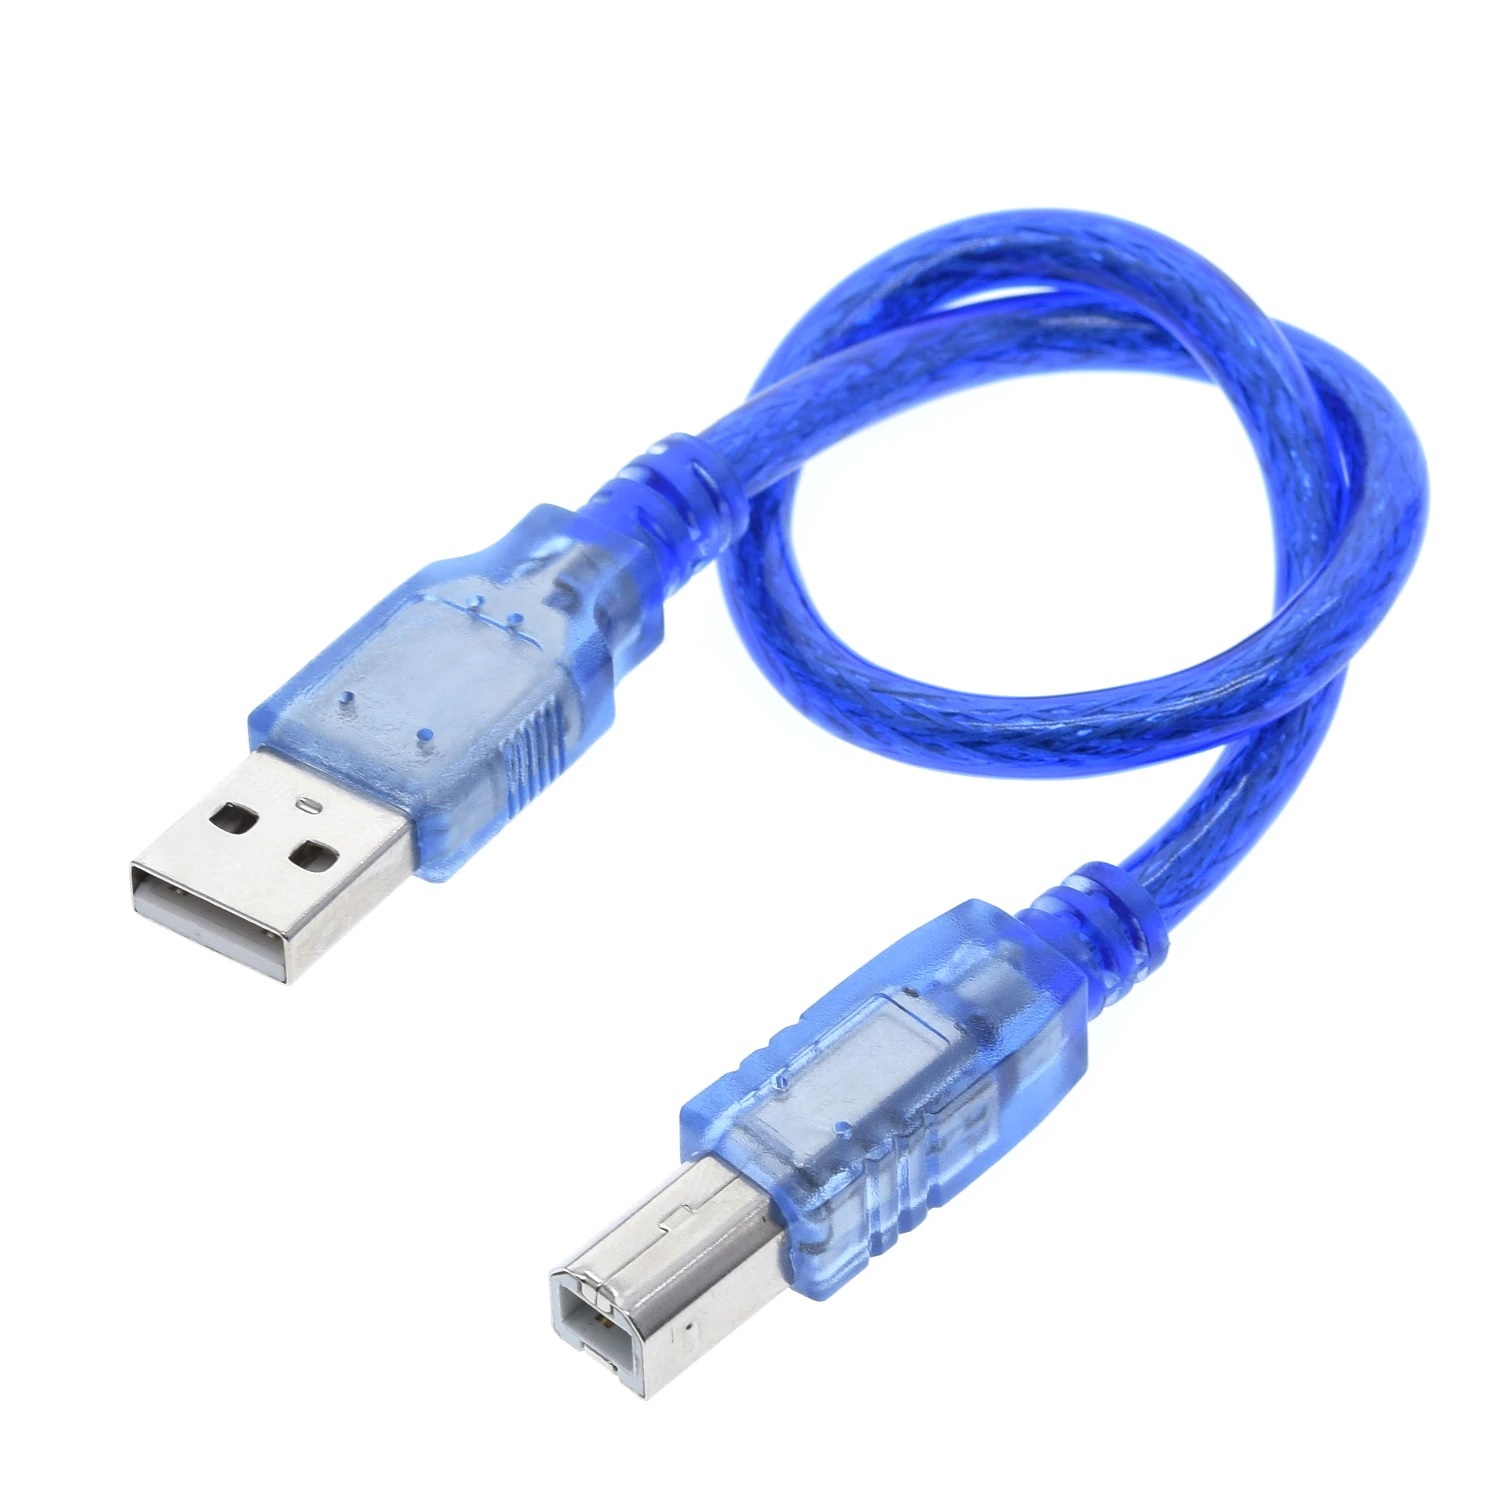 30cm USB Cable For Uno r3 For Nano/MEGA 2560/Leonardo/Pro micro